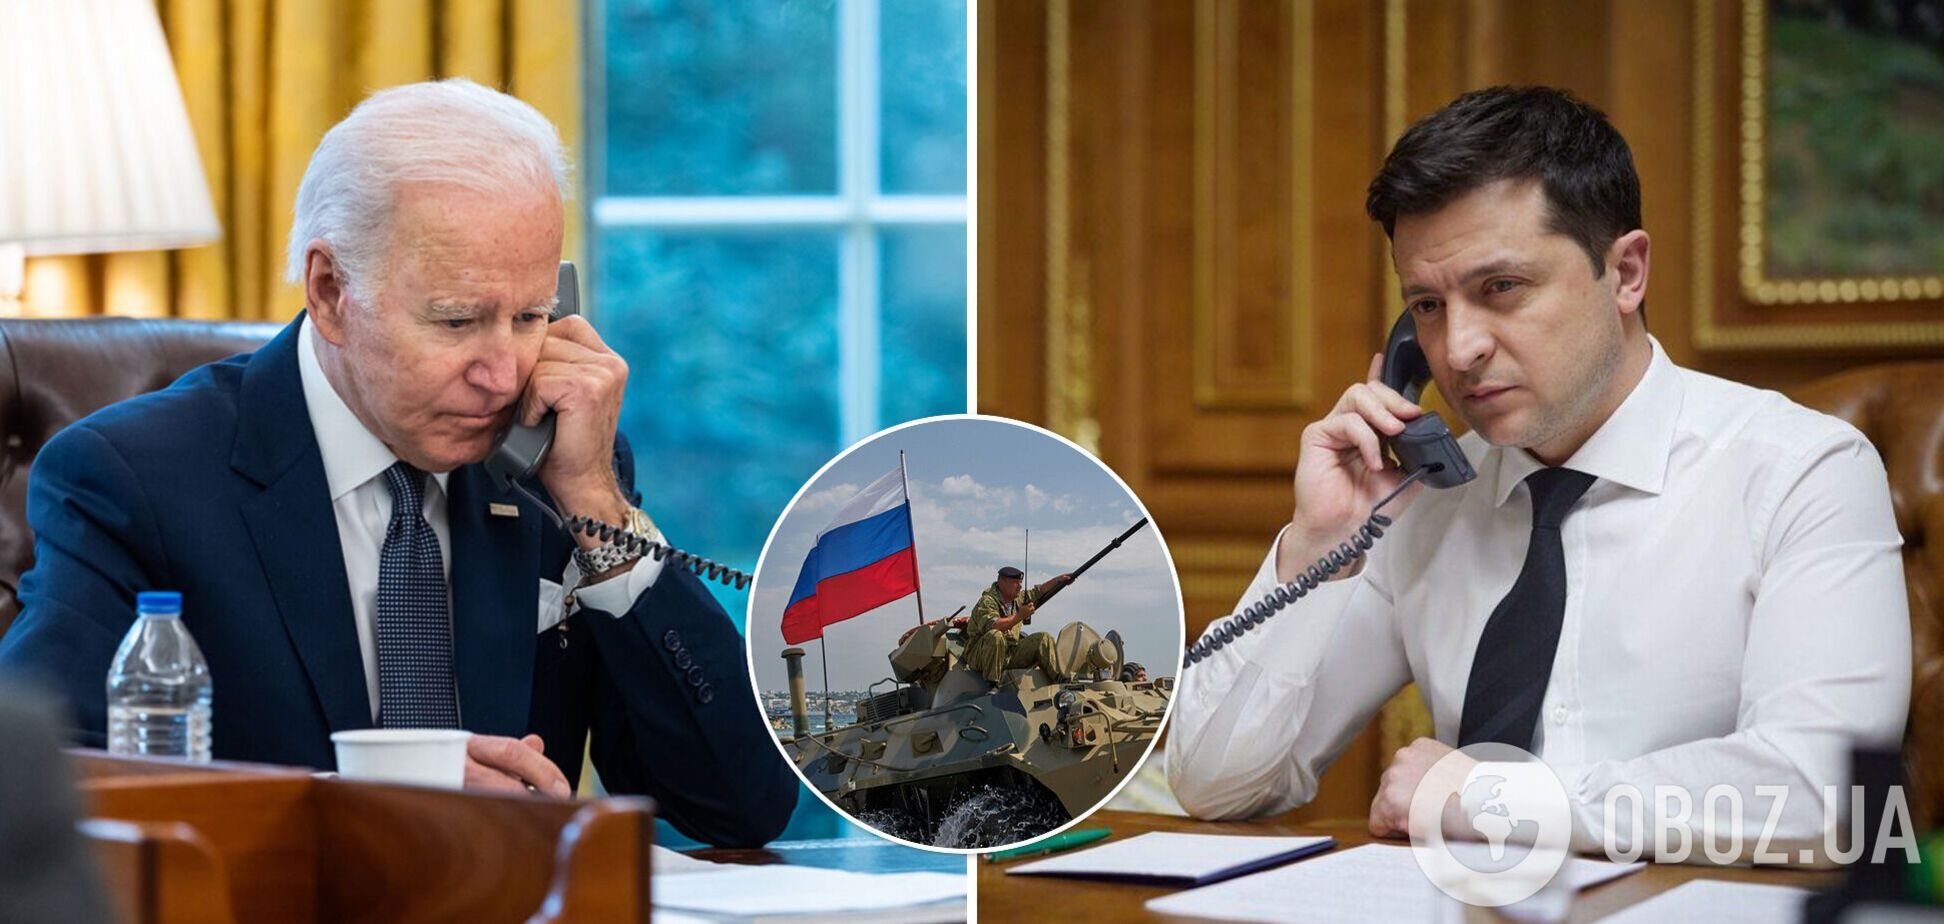 Байден и Зеленский дали 'сигнал' Путину: что ждет Украину и снизится ли риск вторжения РФ